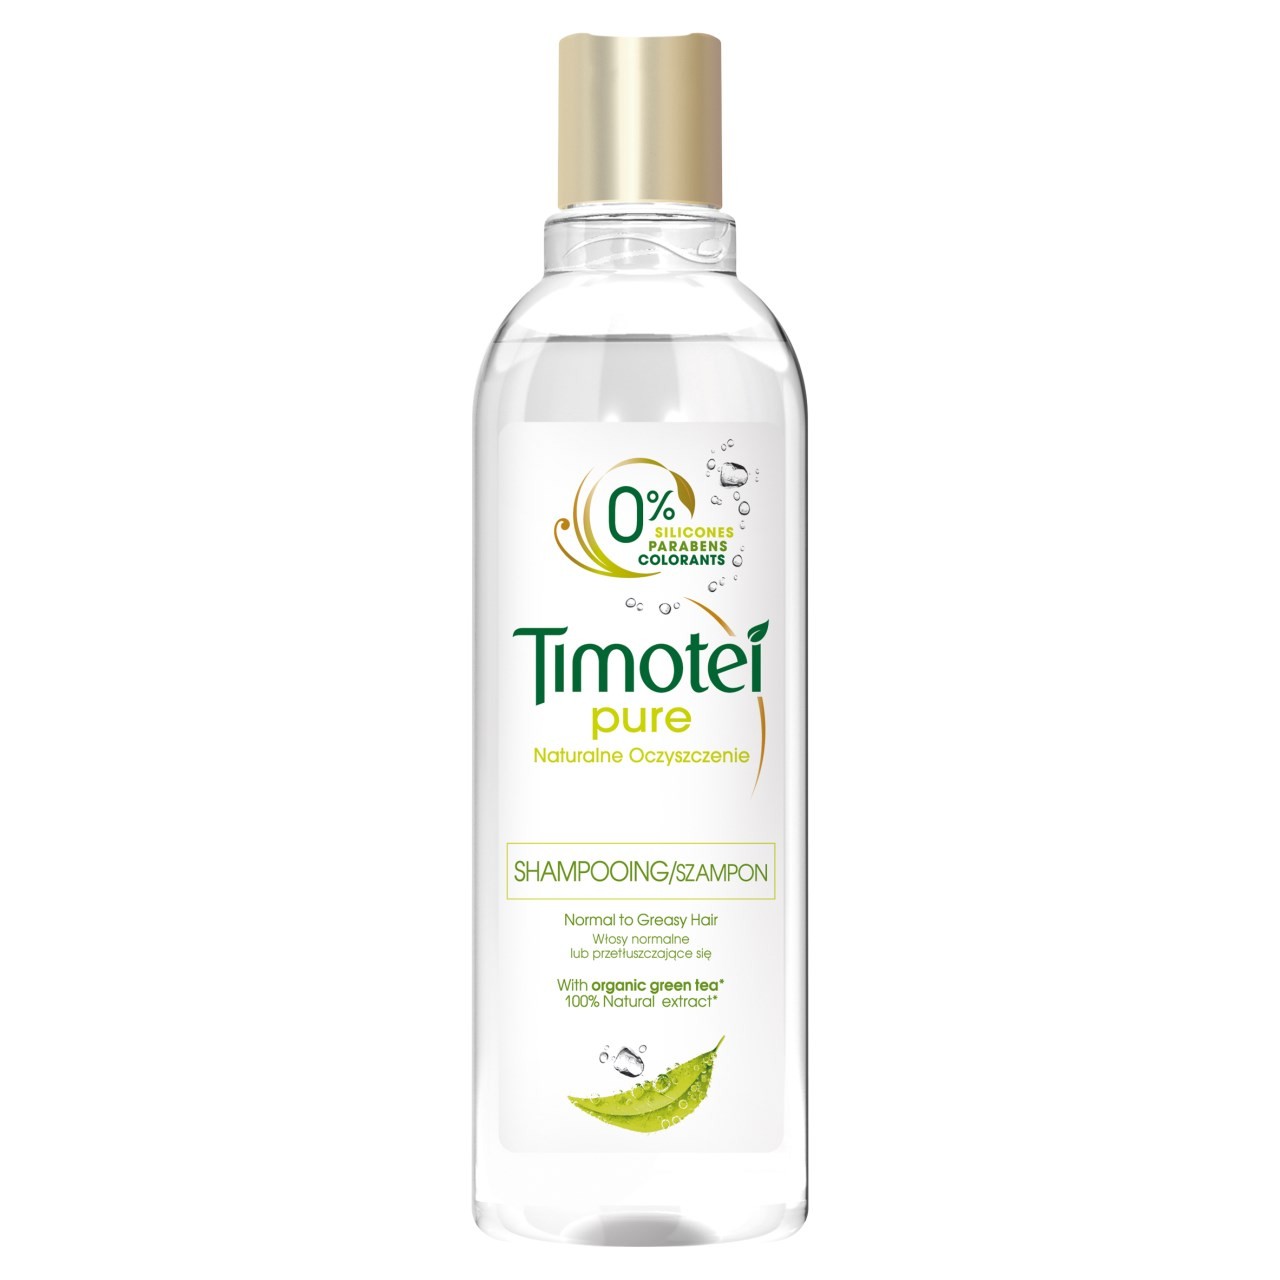 timotei szampon pure